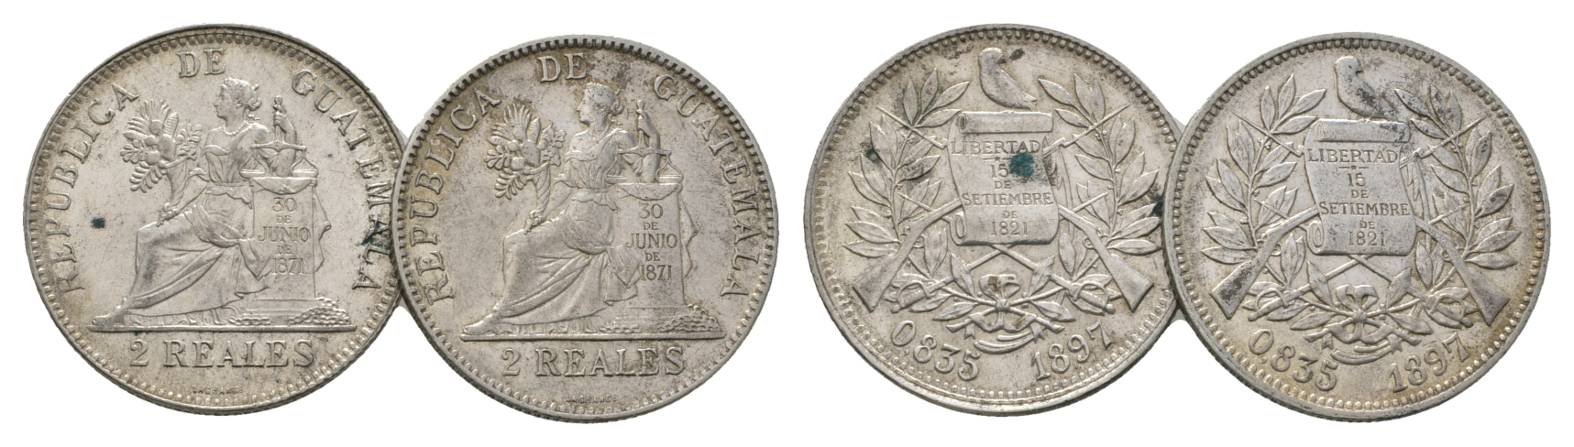  Guatemala, 2 Real 1897   